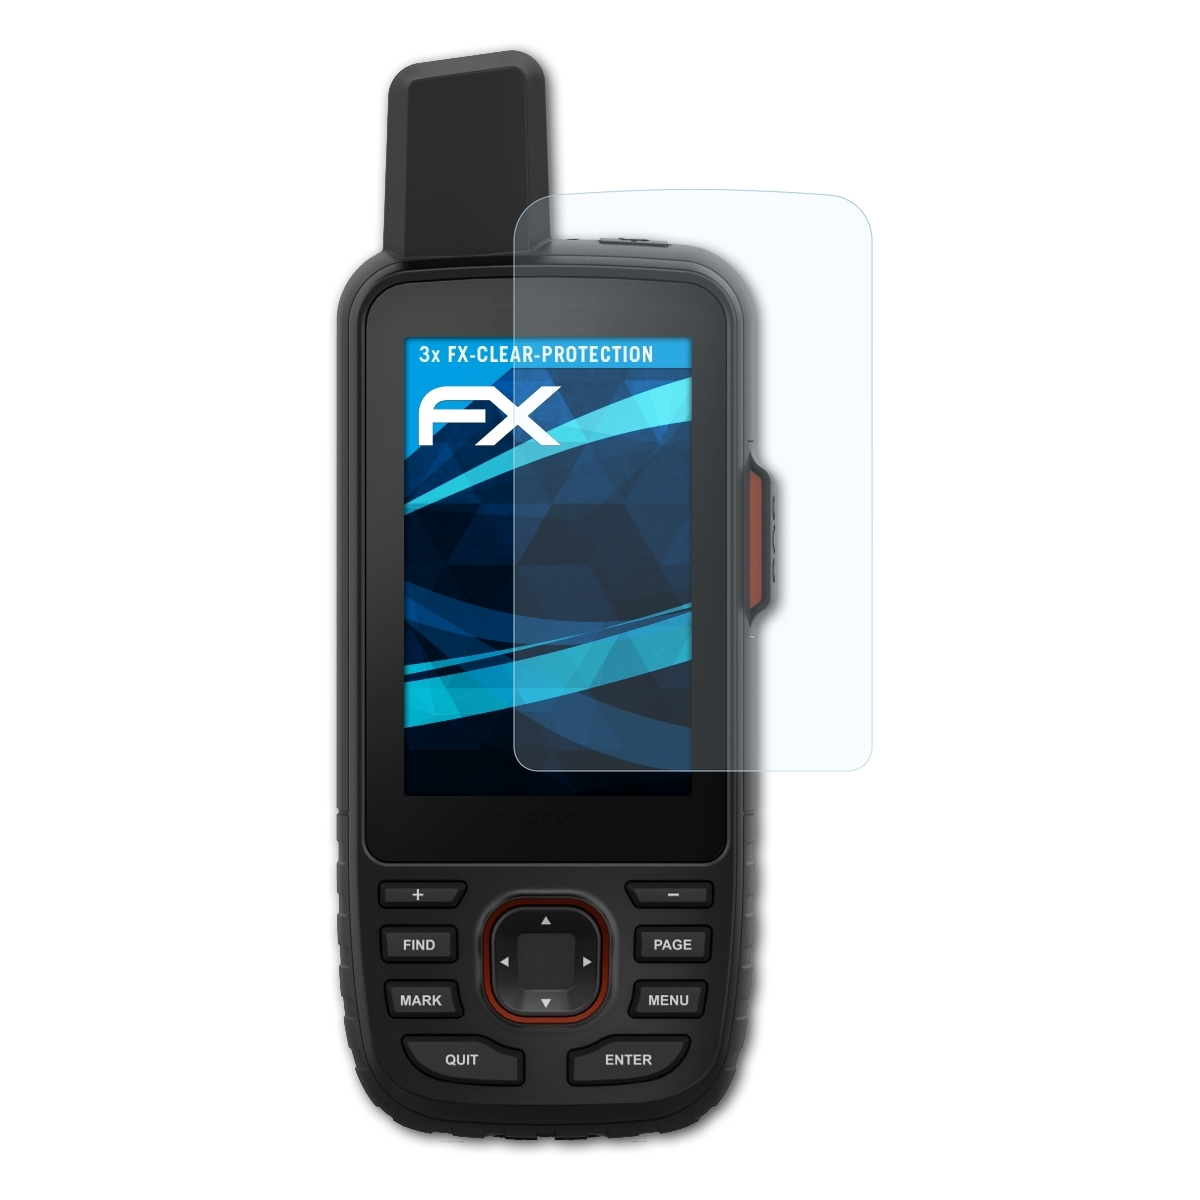 3x ATFOLIX 66i) Garmin Displayschutz(für GPSMap FX-Clear